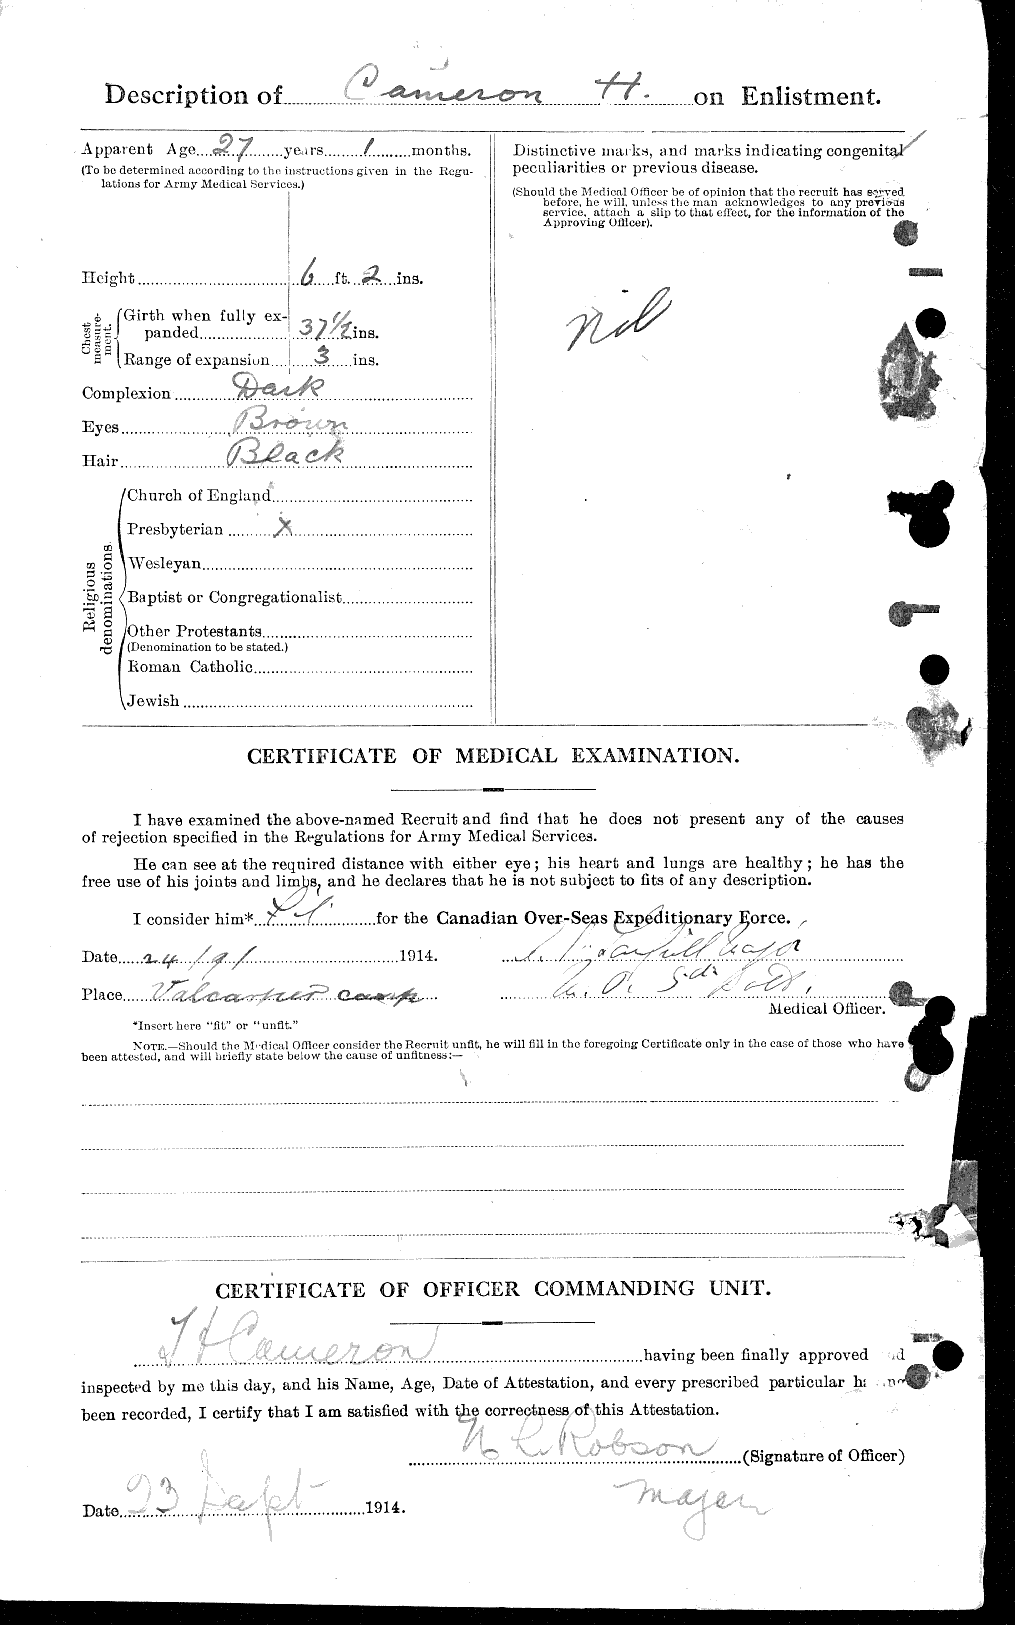 Dossiers du Personnel de la Première Guerre mondiale - CEC 002655b